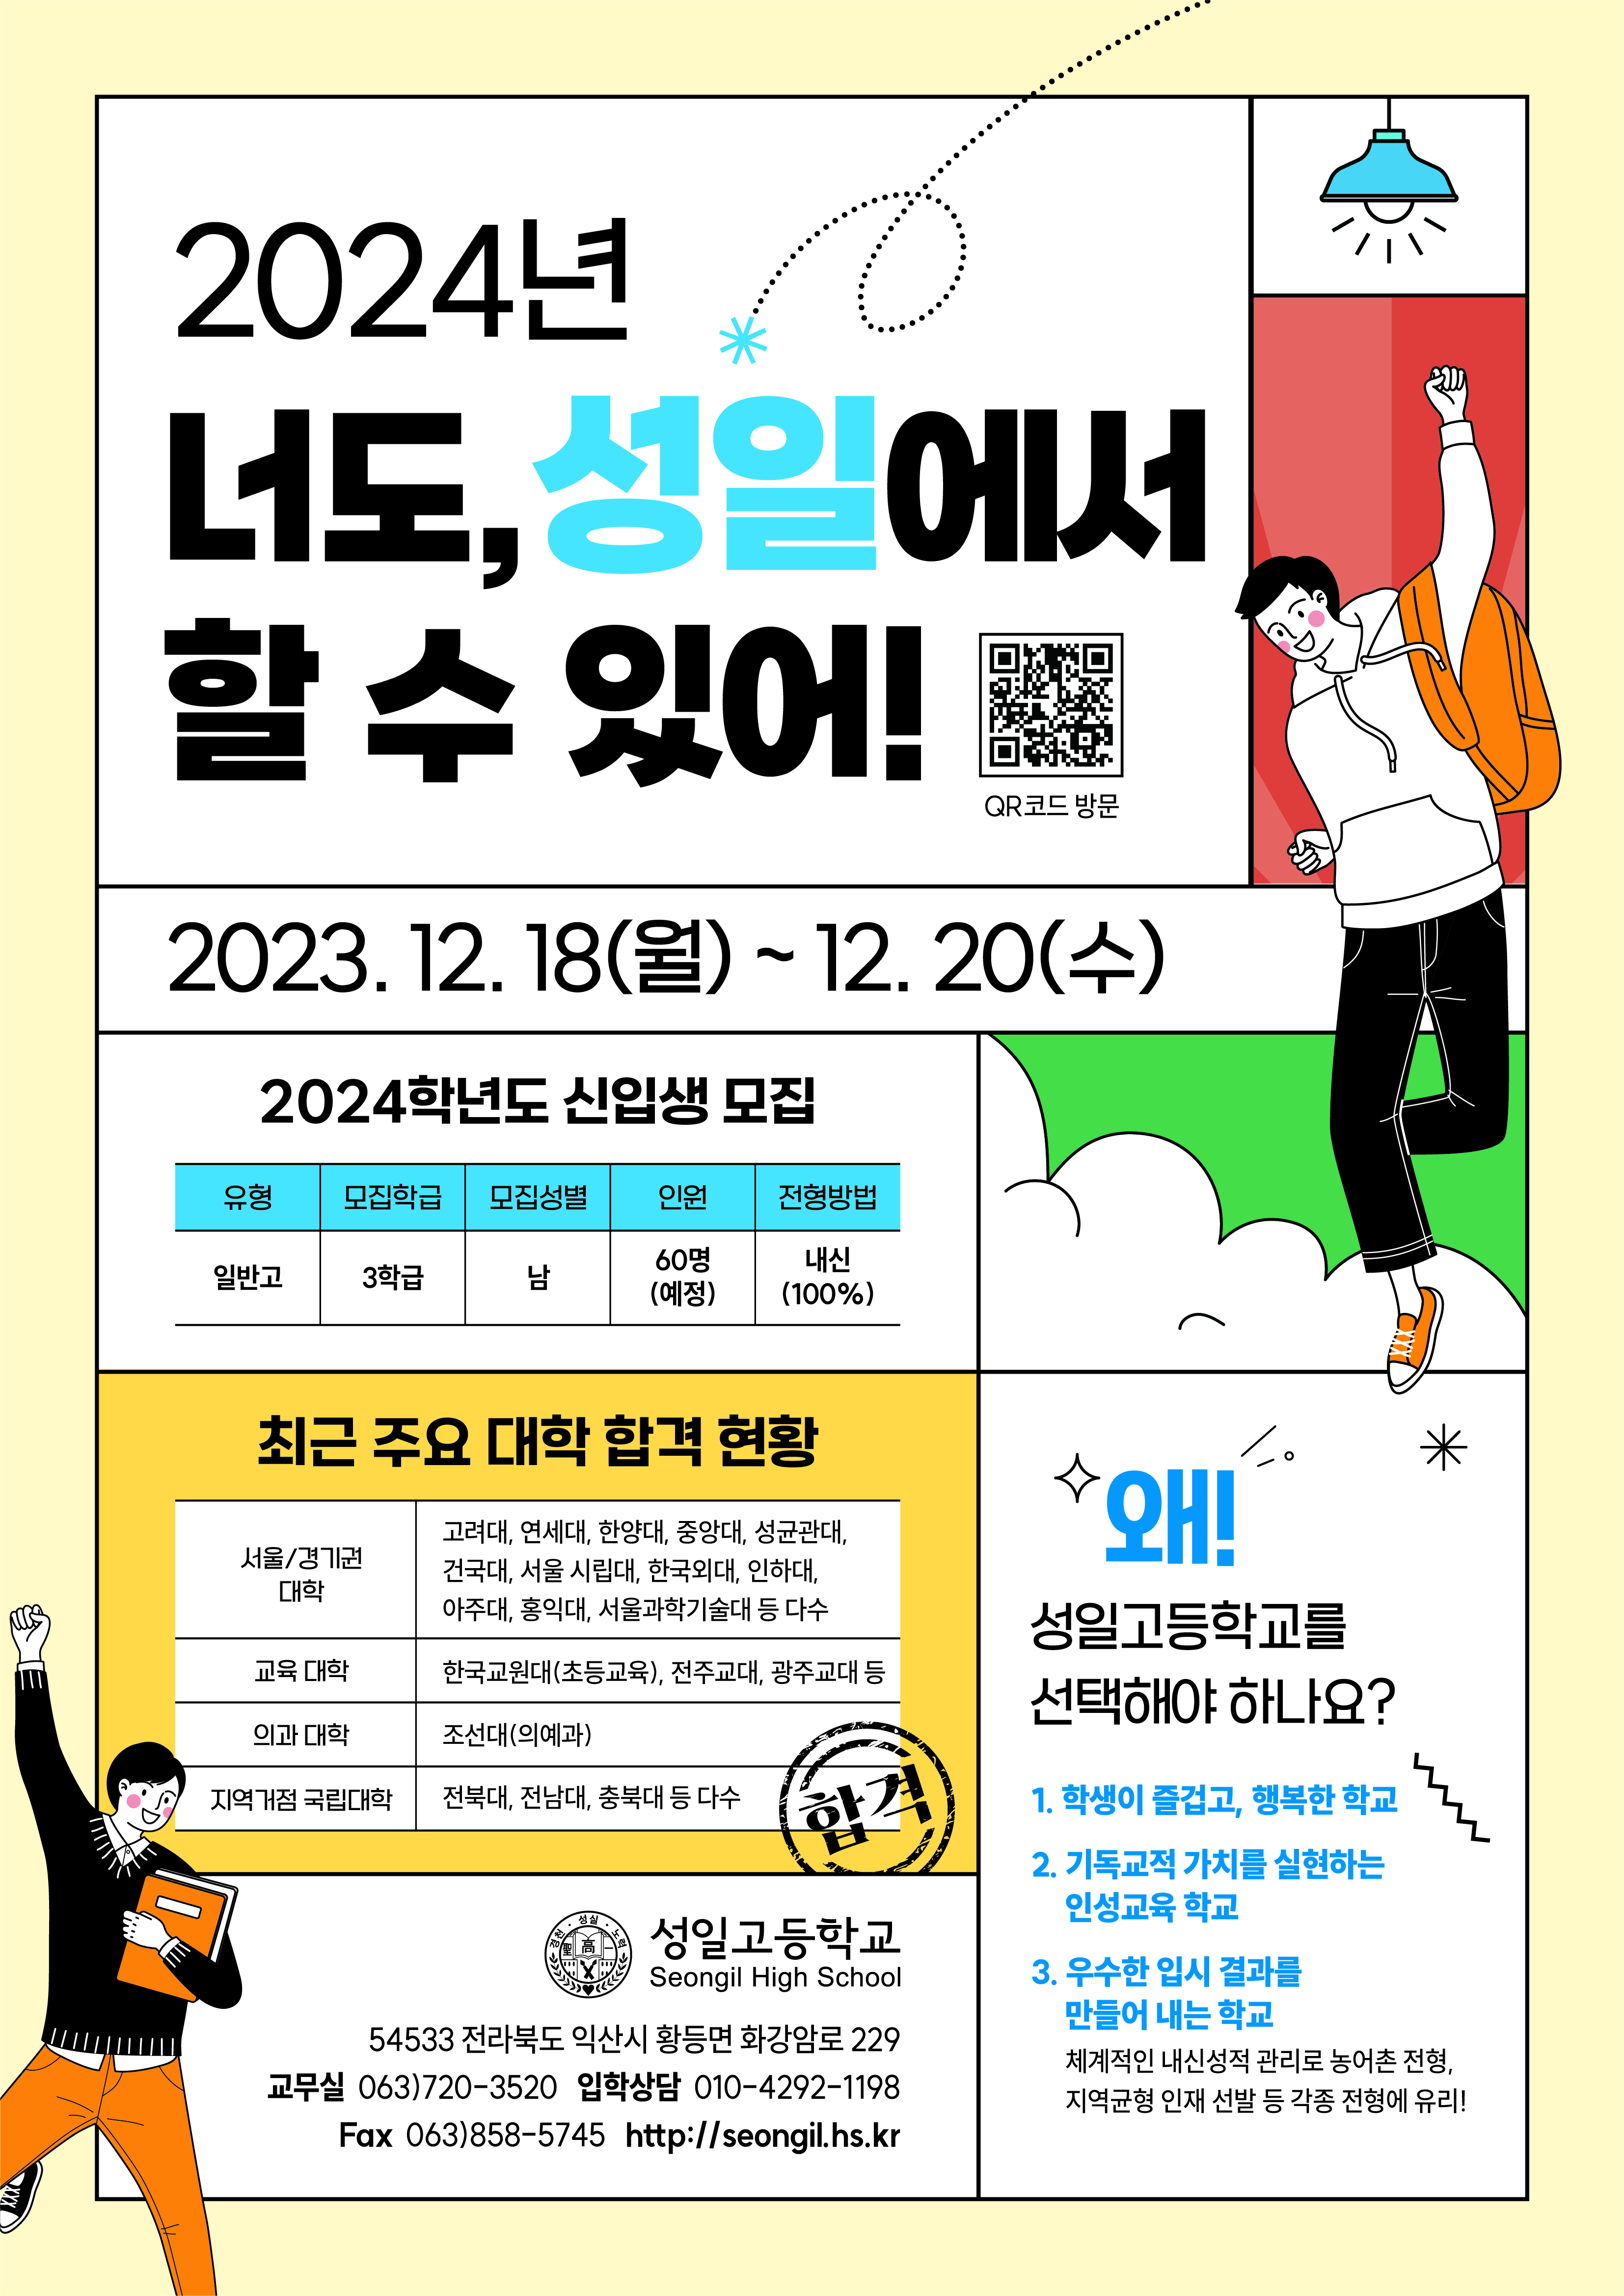 2024학년도 성일고 신입생 홍보 포스터